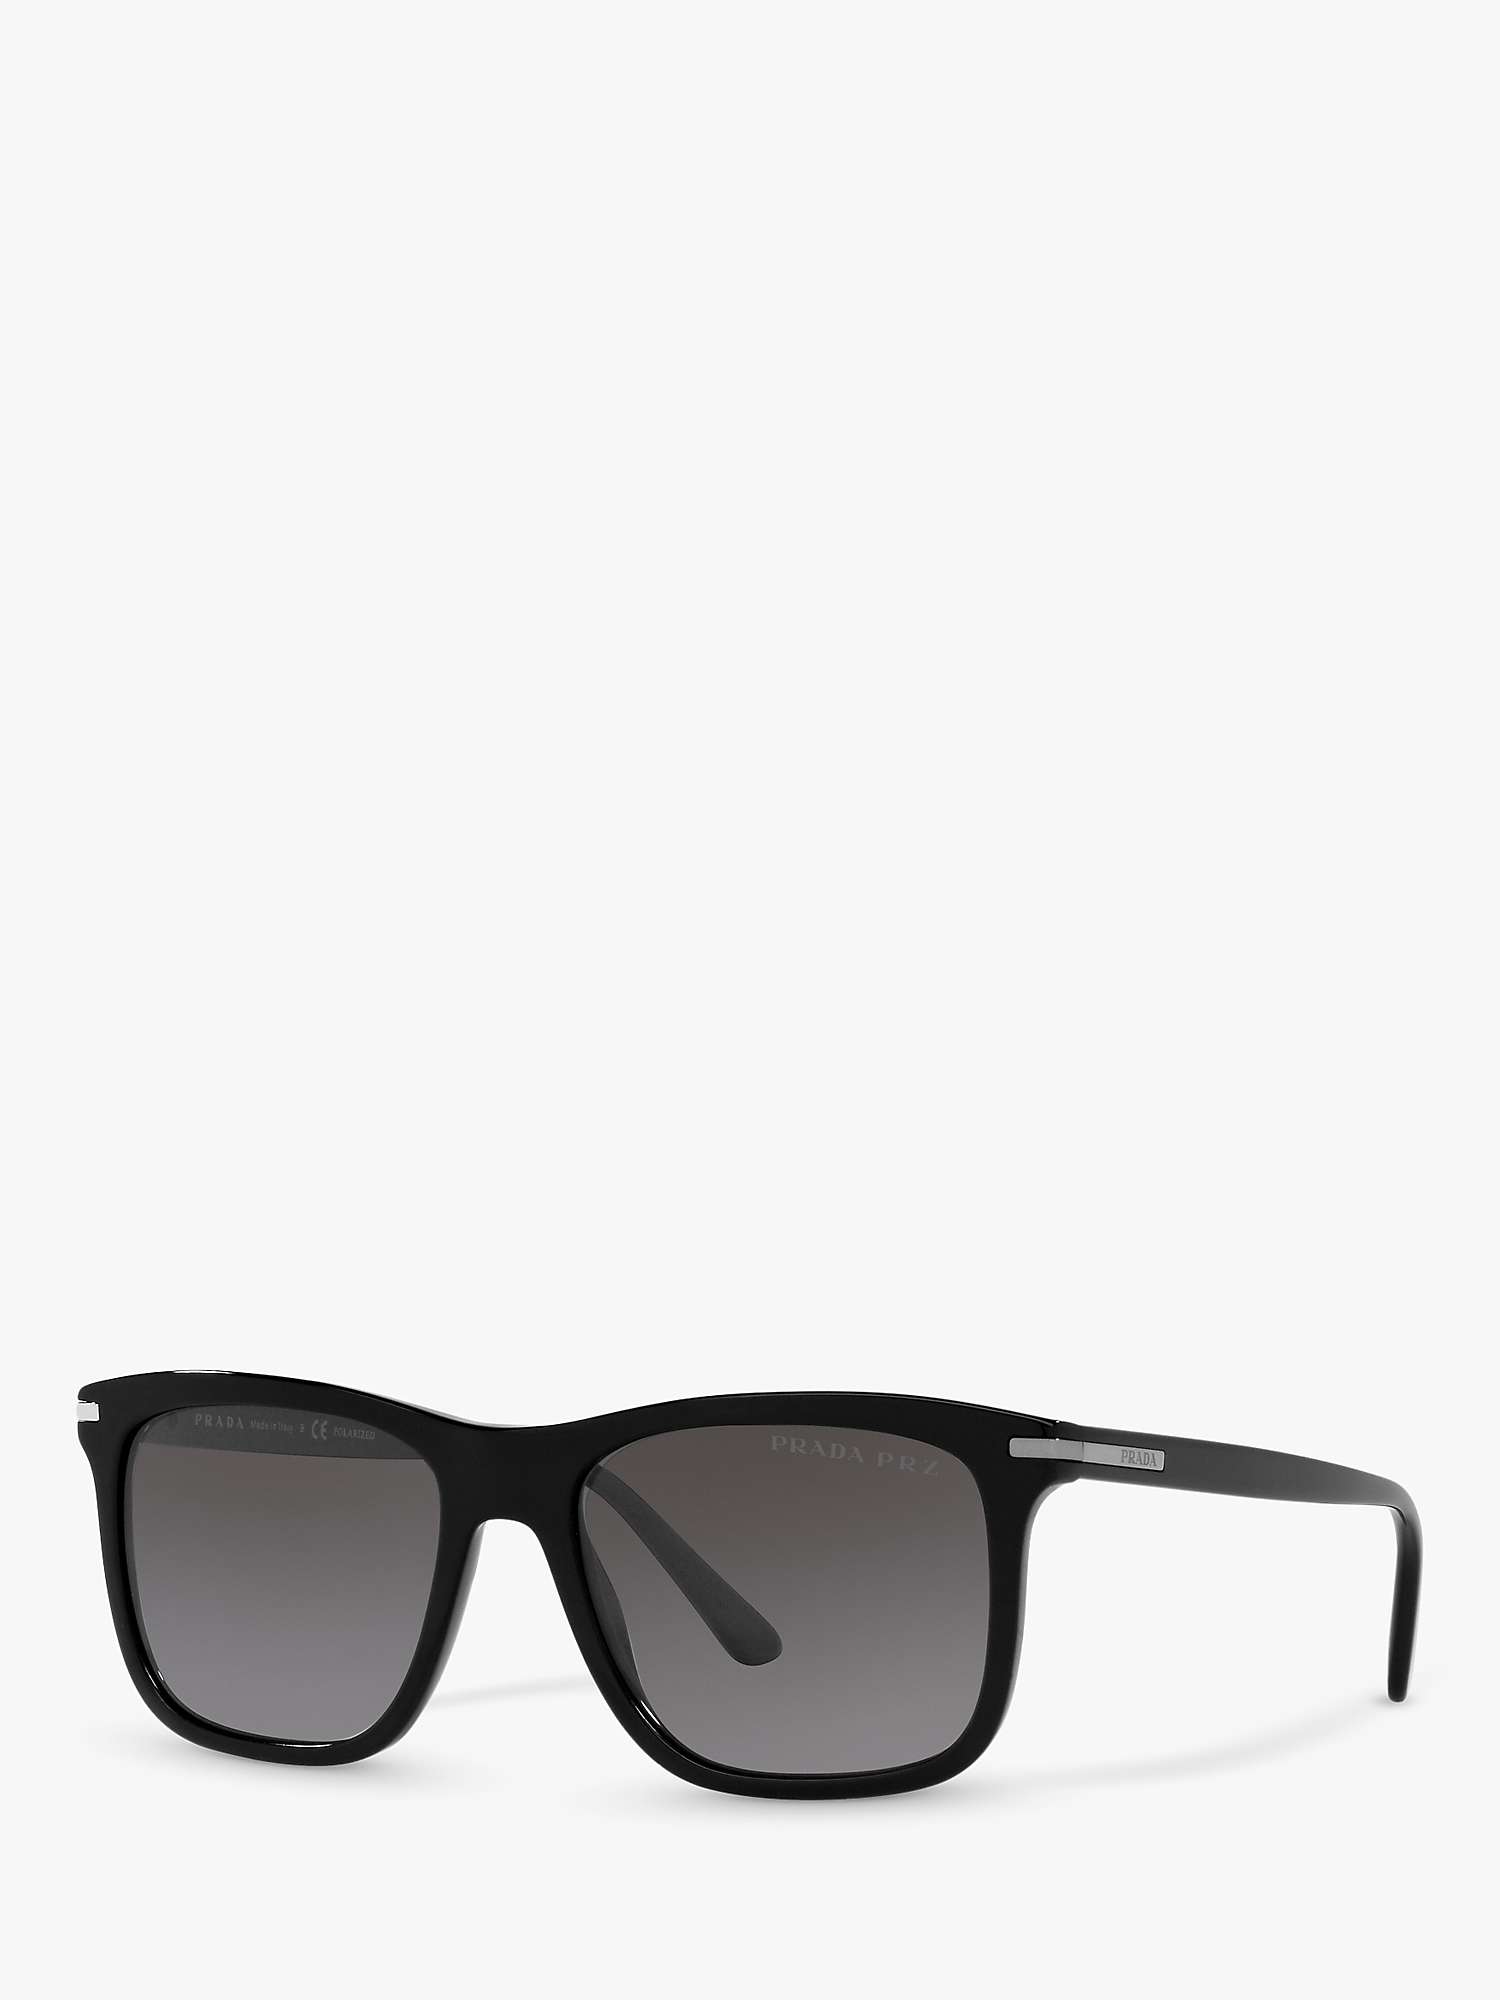 Buy Prada PR 18WS Men's Rectangular Polarised Sunglasses, Black/Grey Gradient Online at johnlewis.com